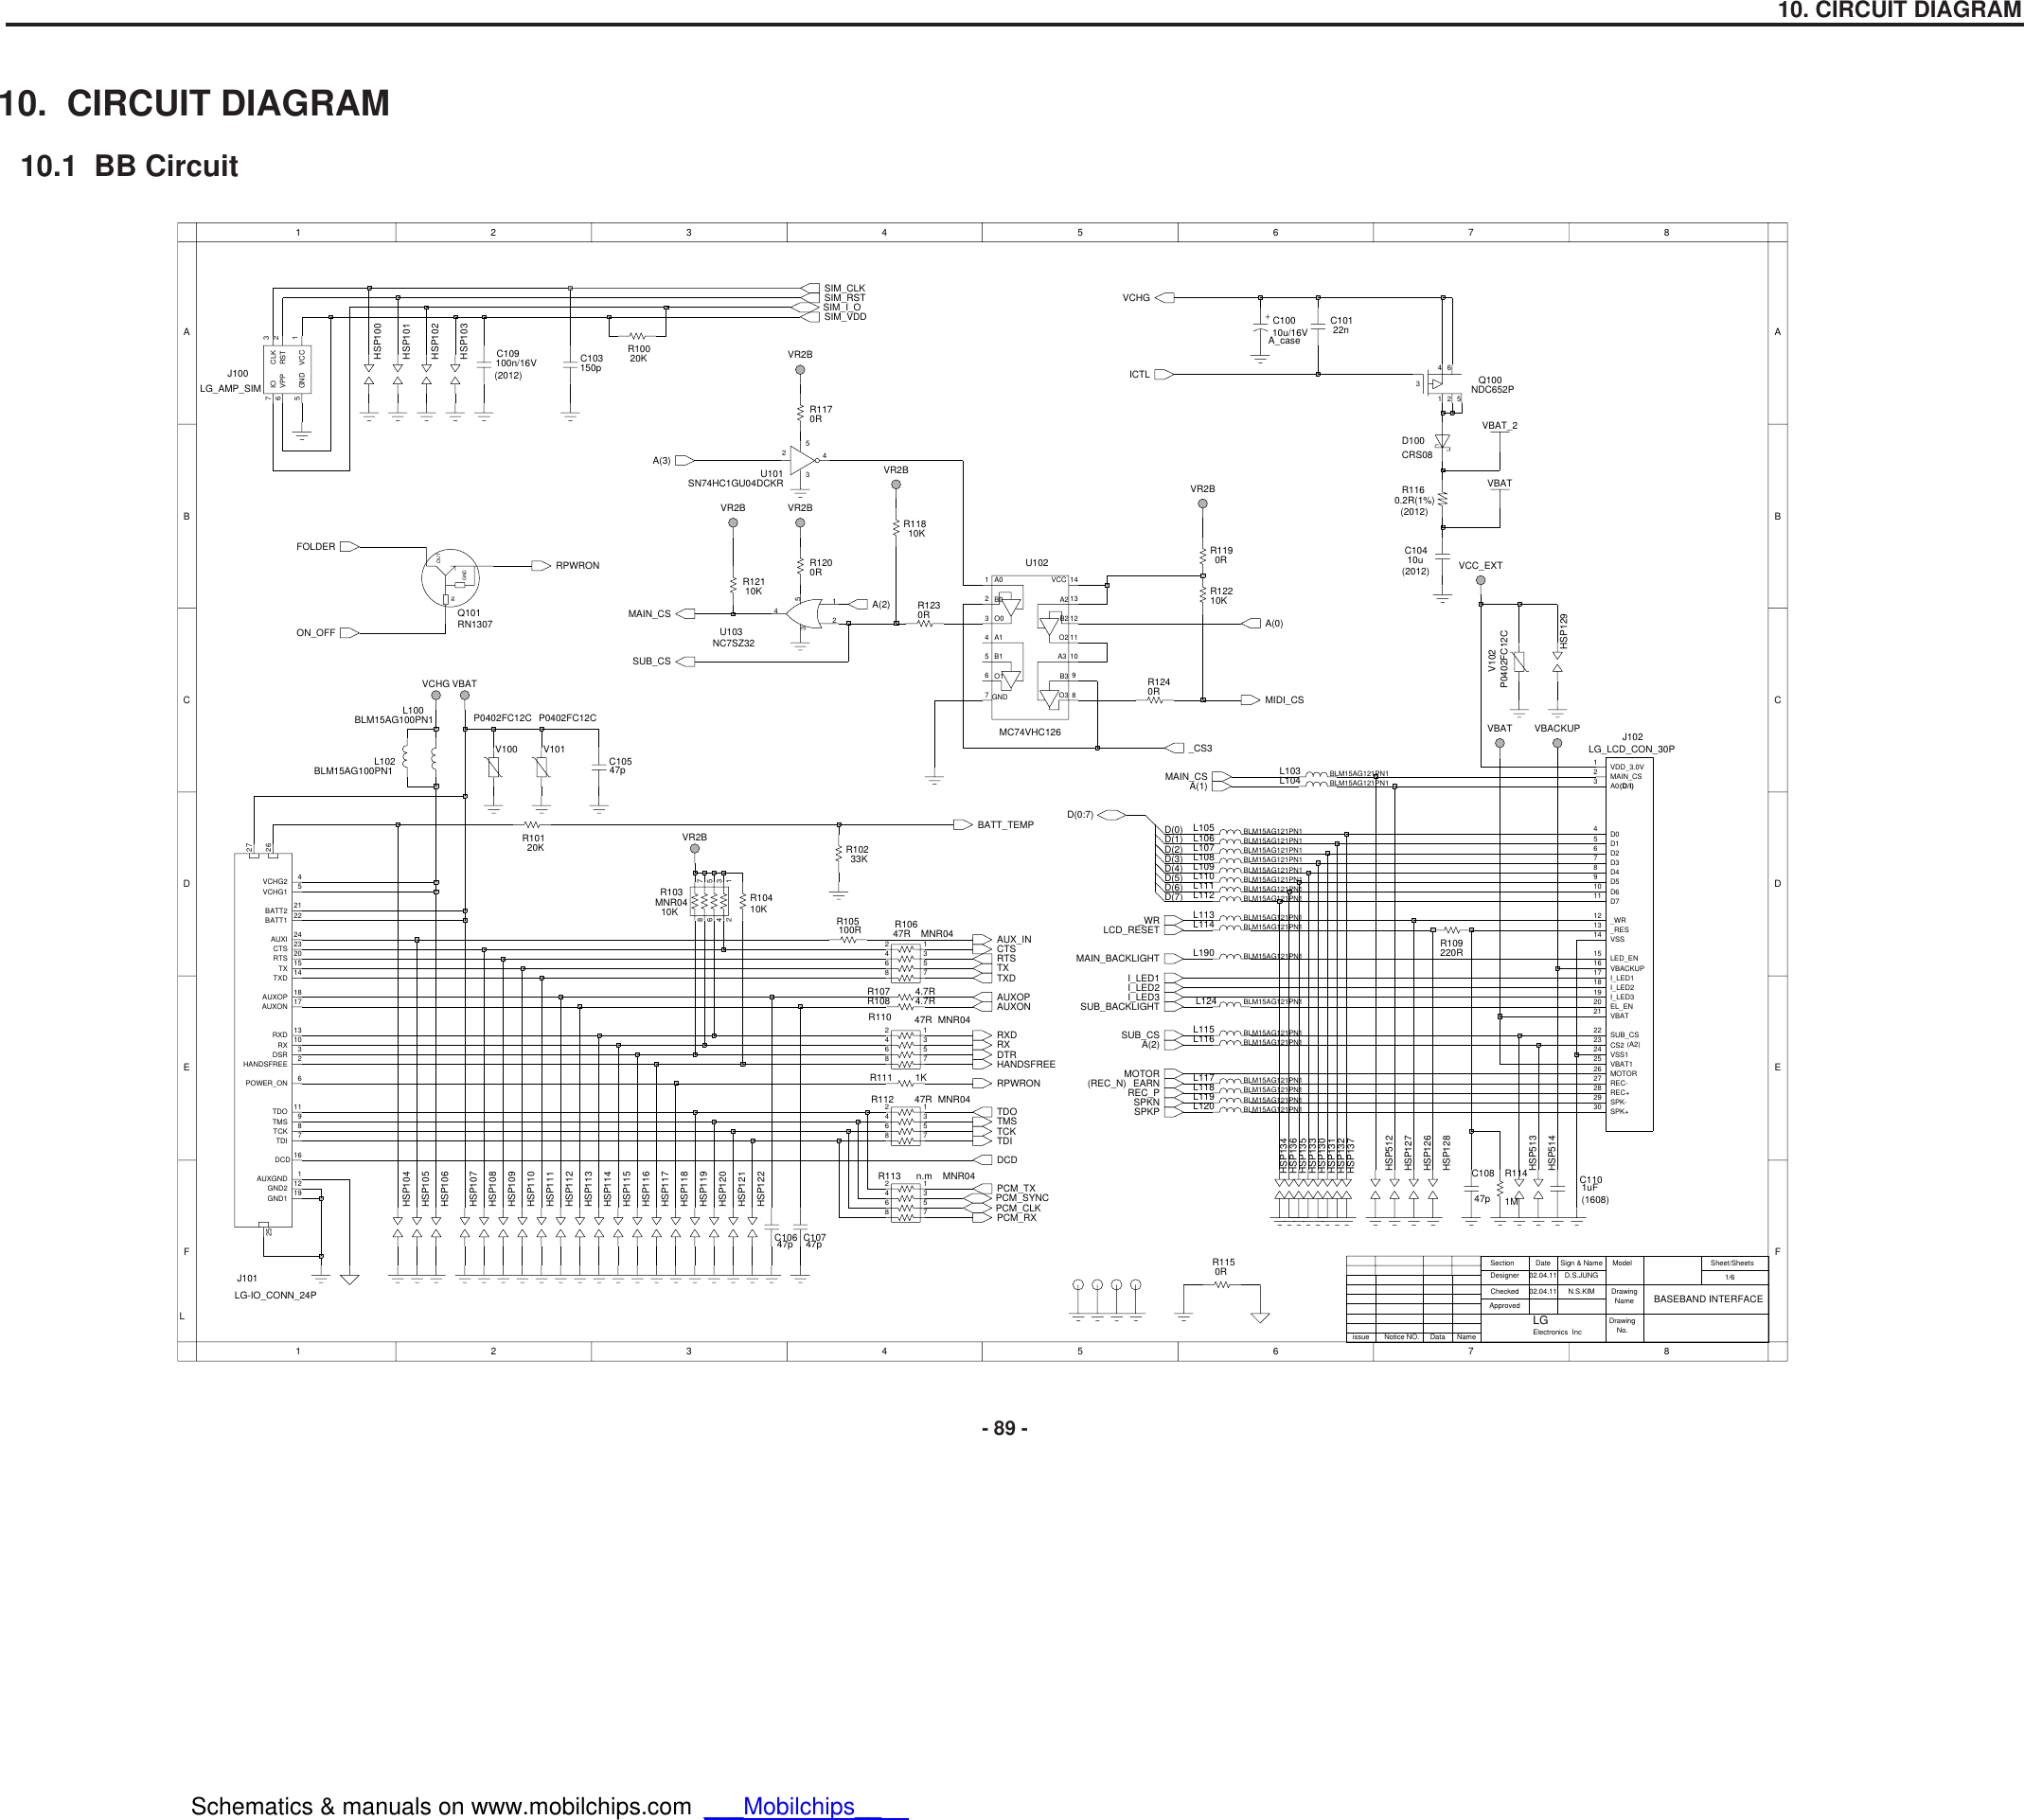 Page 1 of 9 - LG G7020 - Schematics. Www.s-manuals.com. Schematics